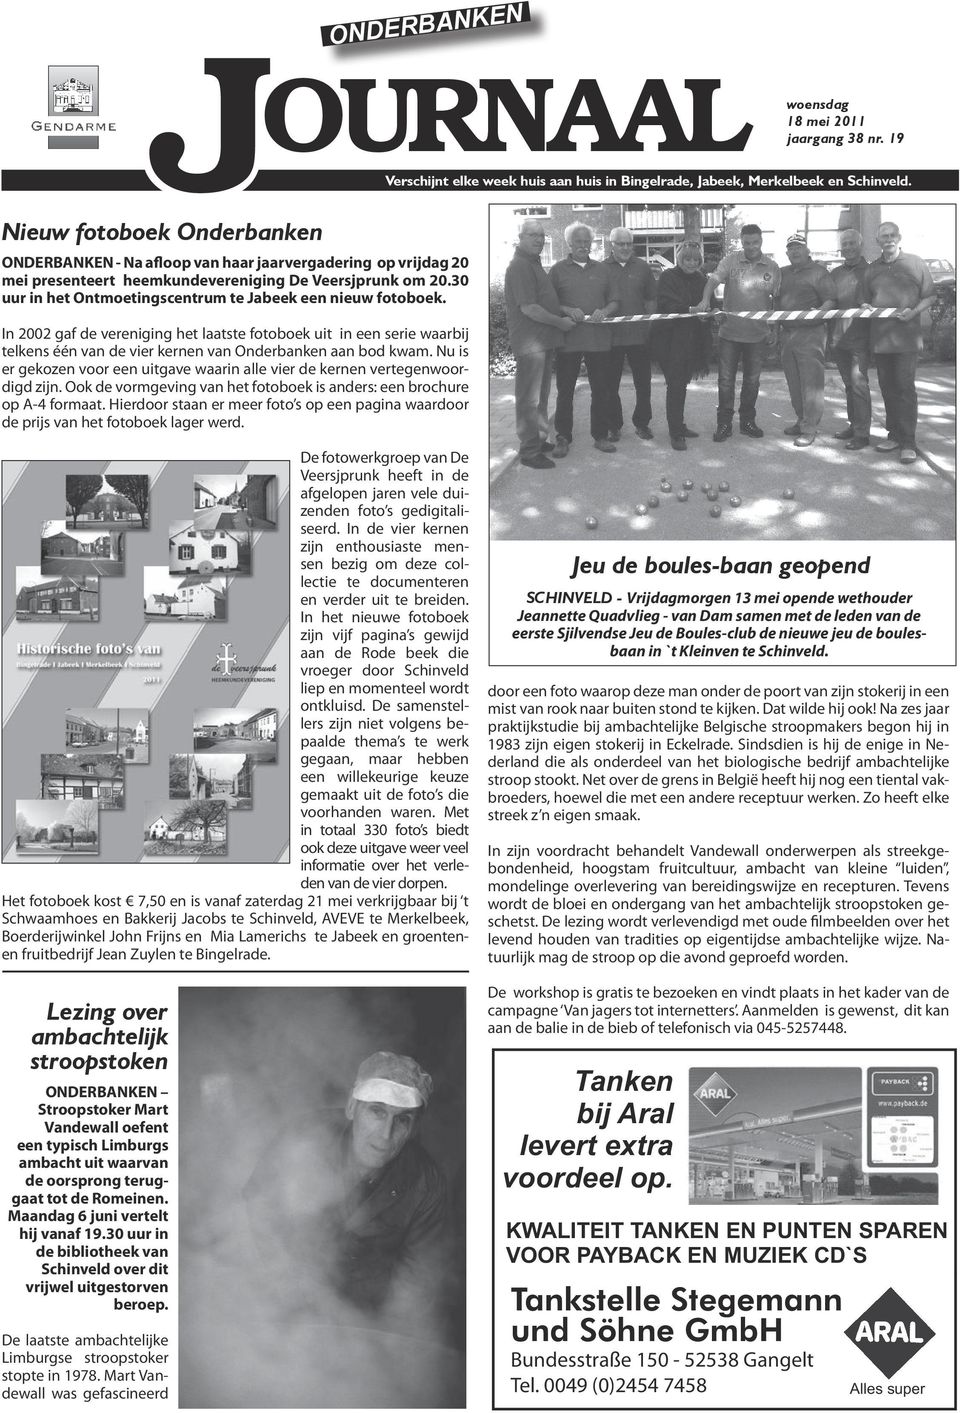 30 uur in het Ontmoetingscentrum te Jabeek een nieuw fotoboek. In 2002 gaf de vereniging het laatste fotoboek uit in een serie waarbij telkens één van de vier kernen van Onderbanken aan bod kwam.